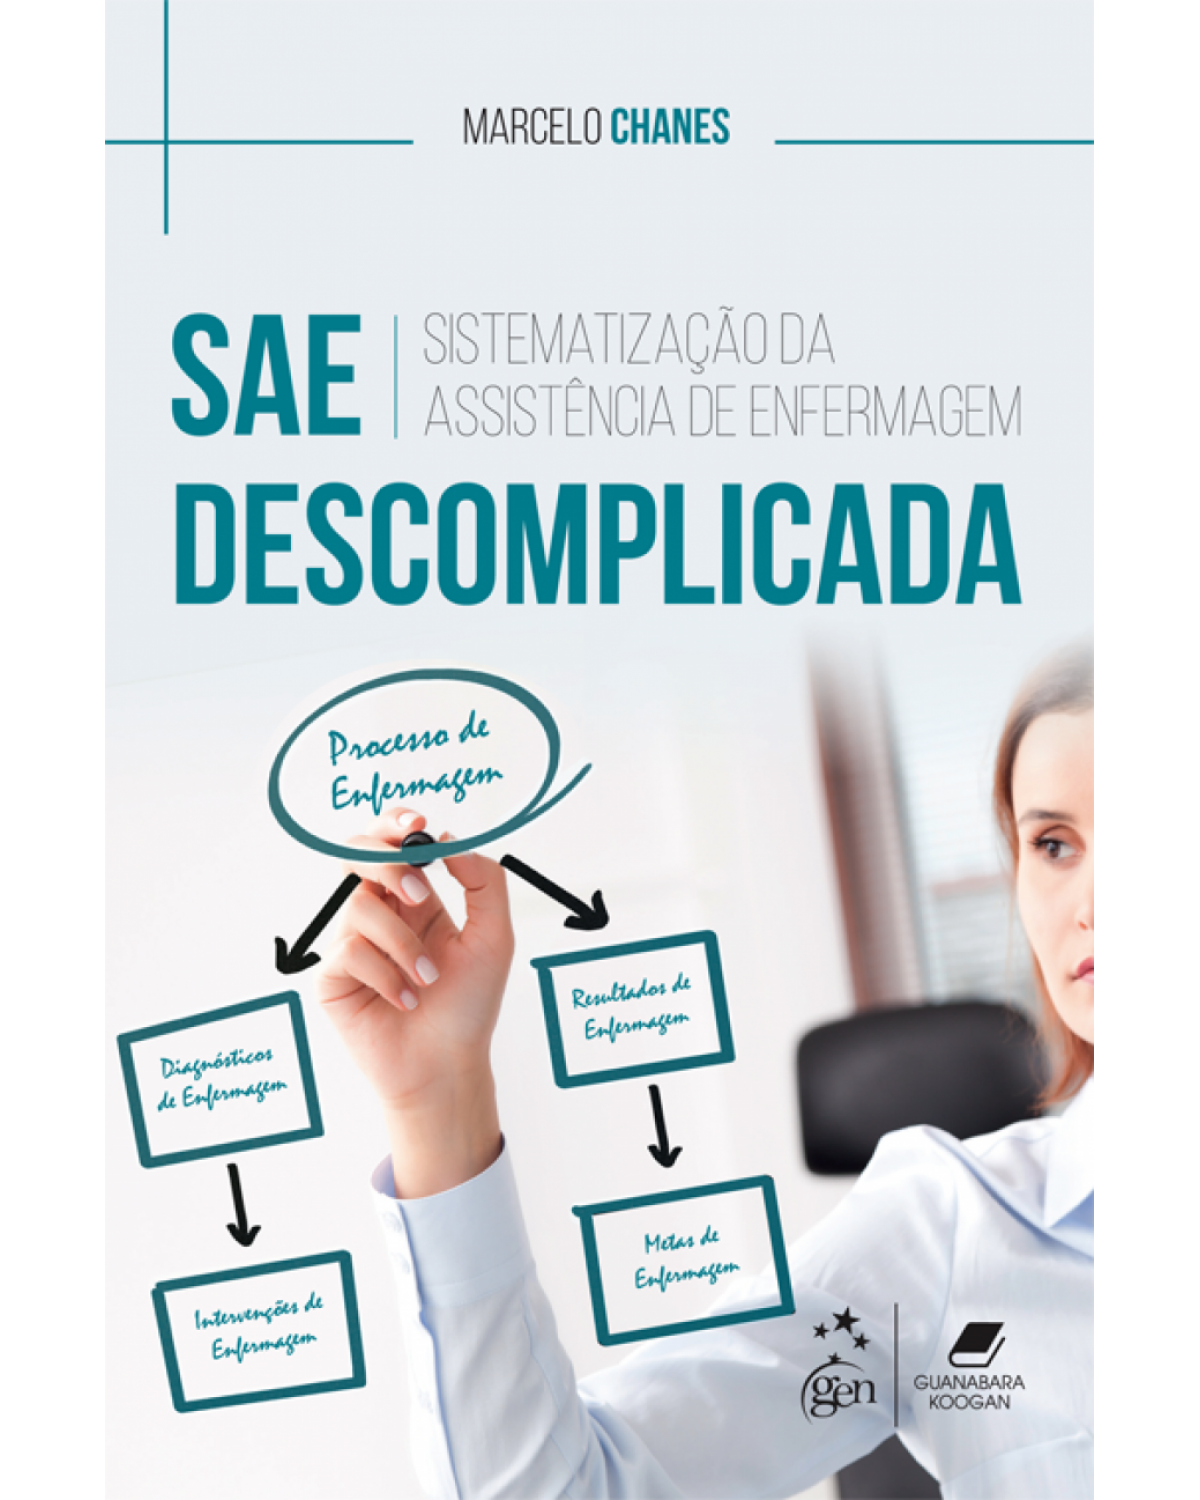 SAE descomplicada - Sistematização da Assistência de Enfermagem - 1ª Edição | 2018